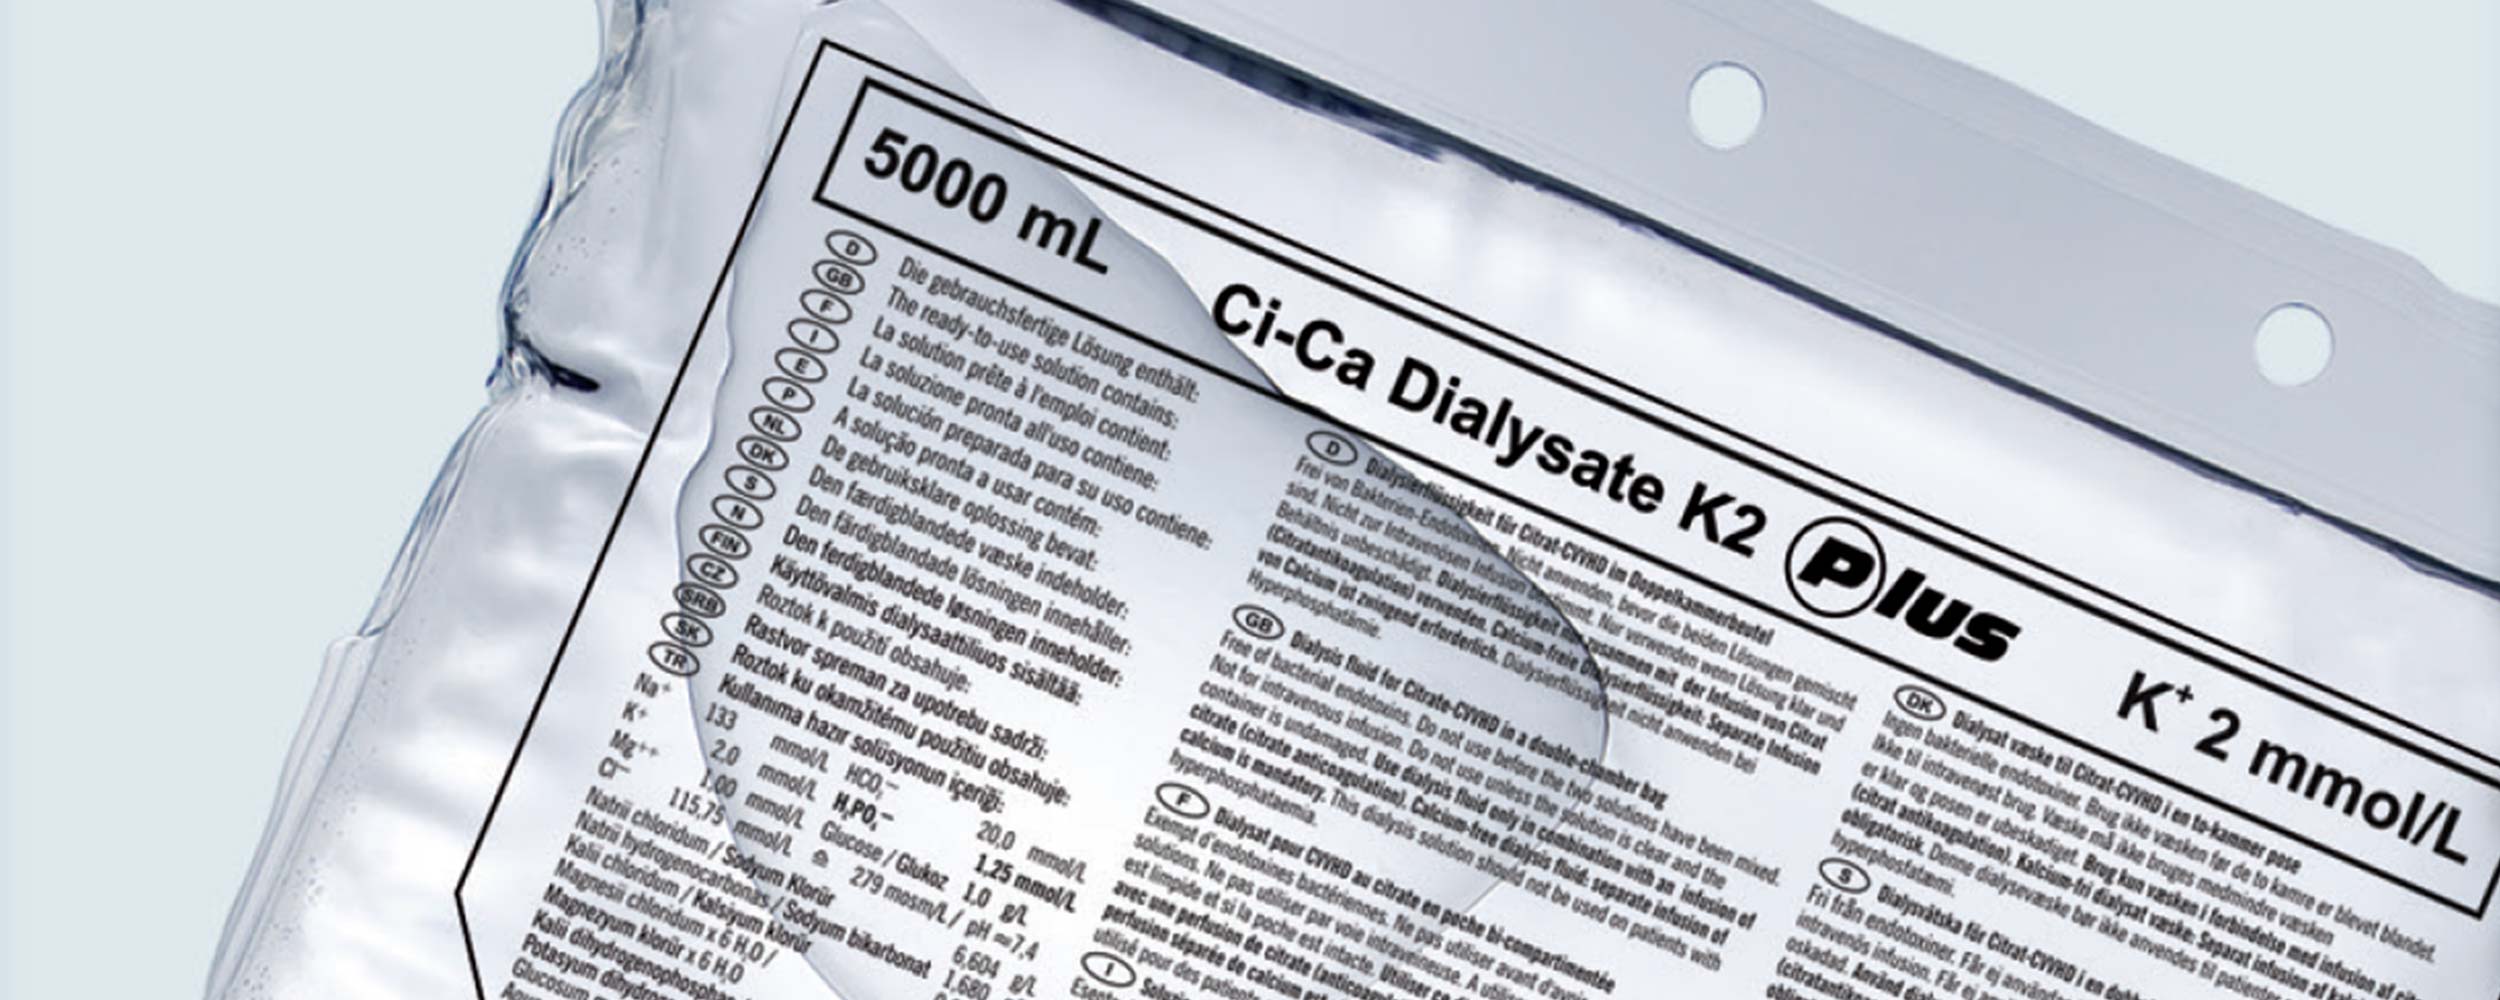 Ci-Ca® Dialysate Plus lösningspåse